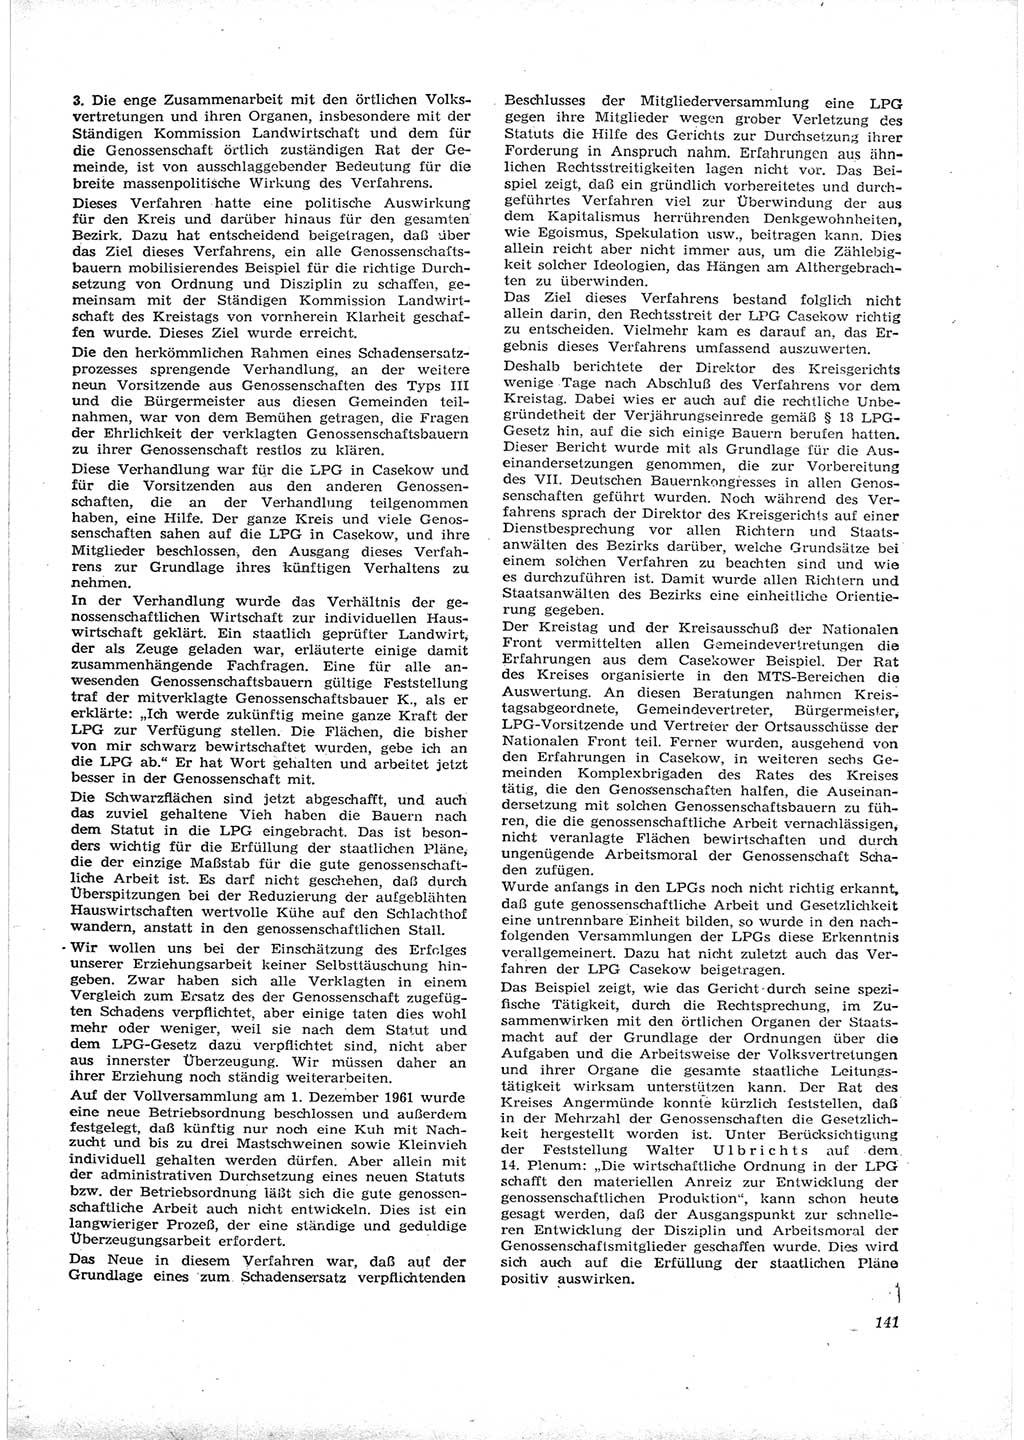 Neue Justiz (NJ), Zeitschrift für Recht und Rechtswissenschaft [Deutsche Demokratische Republik (DDR)], 16. Jahrgang 1962, Seite 141 (NJ DDR 1962, S. 141)